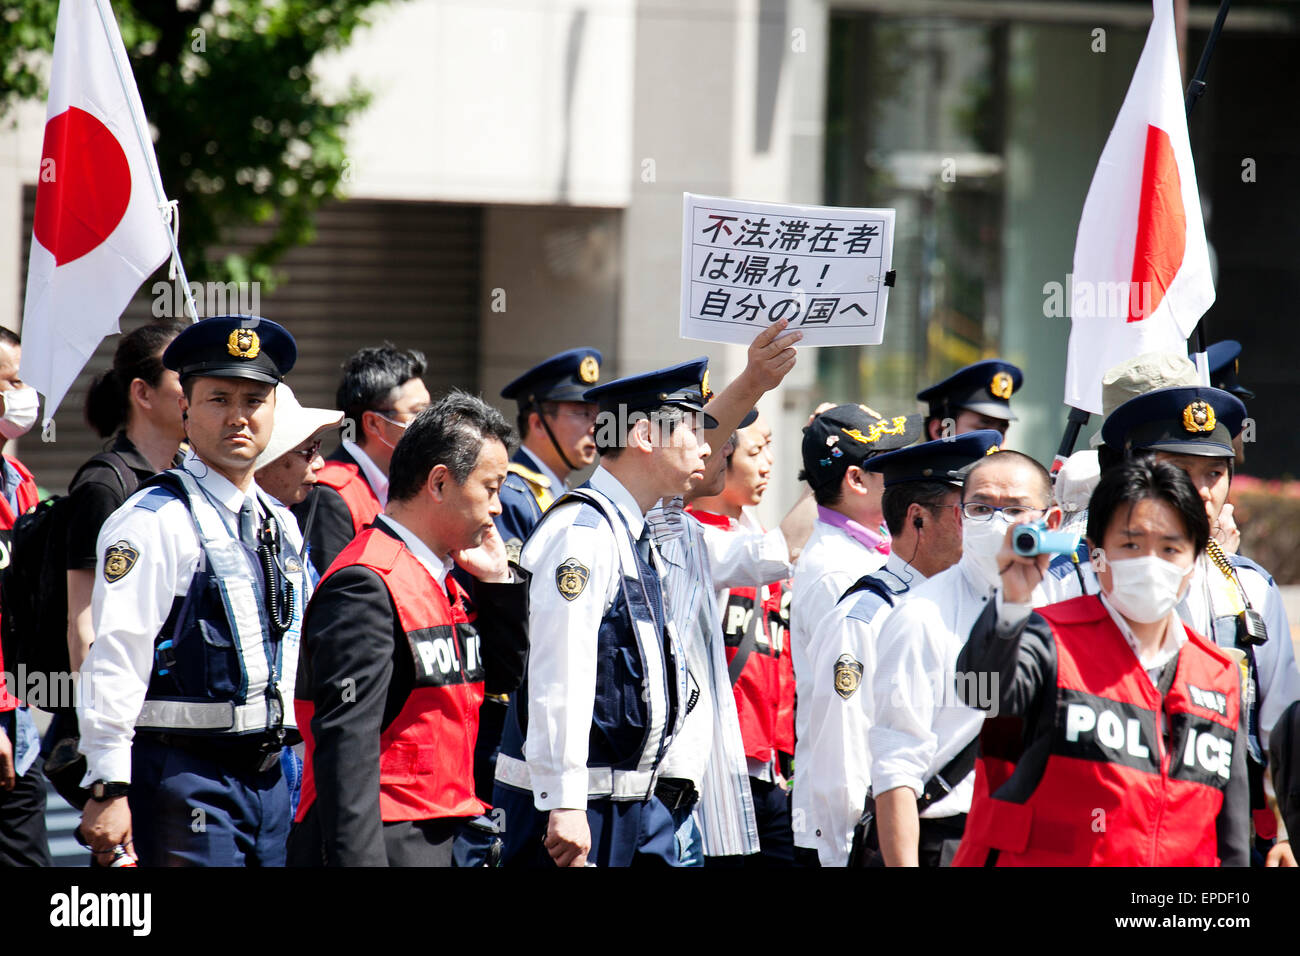 Tokio, Japón. 17 de mayo de 2015. Soporte de la policía para proteger a los miembros de la NPO Houjin Gaikokujin Hanzai Tsuiho deshacer (el Movimiento para eliminar los crímenes por extranjeros) en el distrito de Akihabara el 17 de mayo de 2015, Tokio, Japón. Más de un centenar de activistas antirracistas protestaron contra una manifestación por el ala derecha NPO celebrada el 17 de mayo, alrededor de las calles de Akihabara. Crédito: Aflo Co., Ltd./Alamy Live News Foto de stock